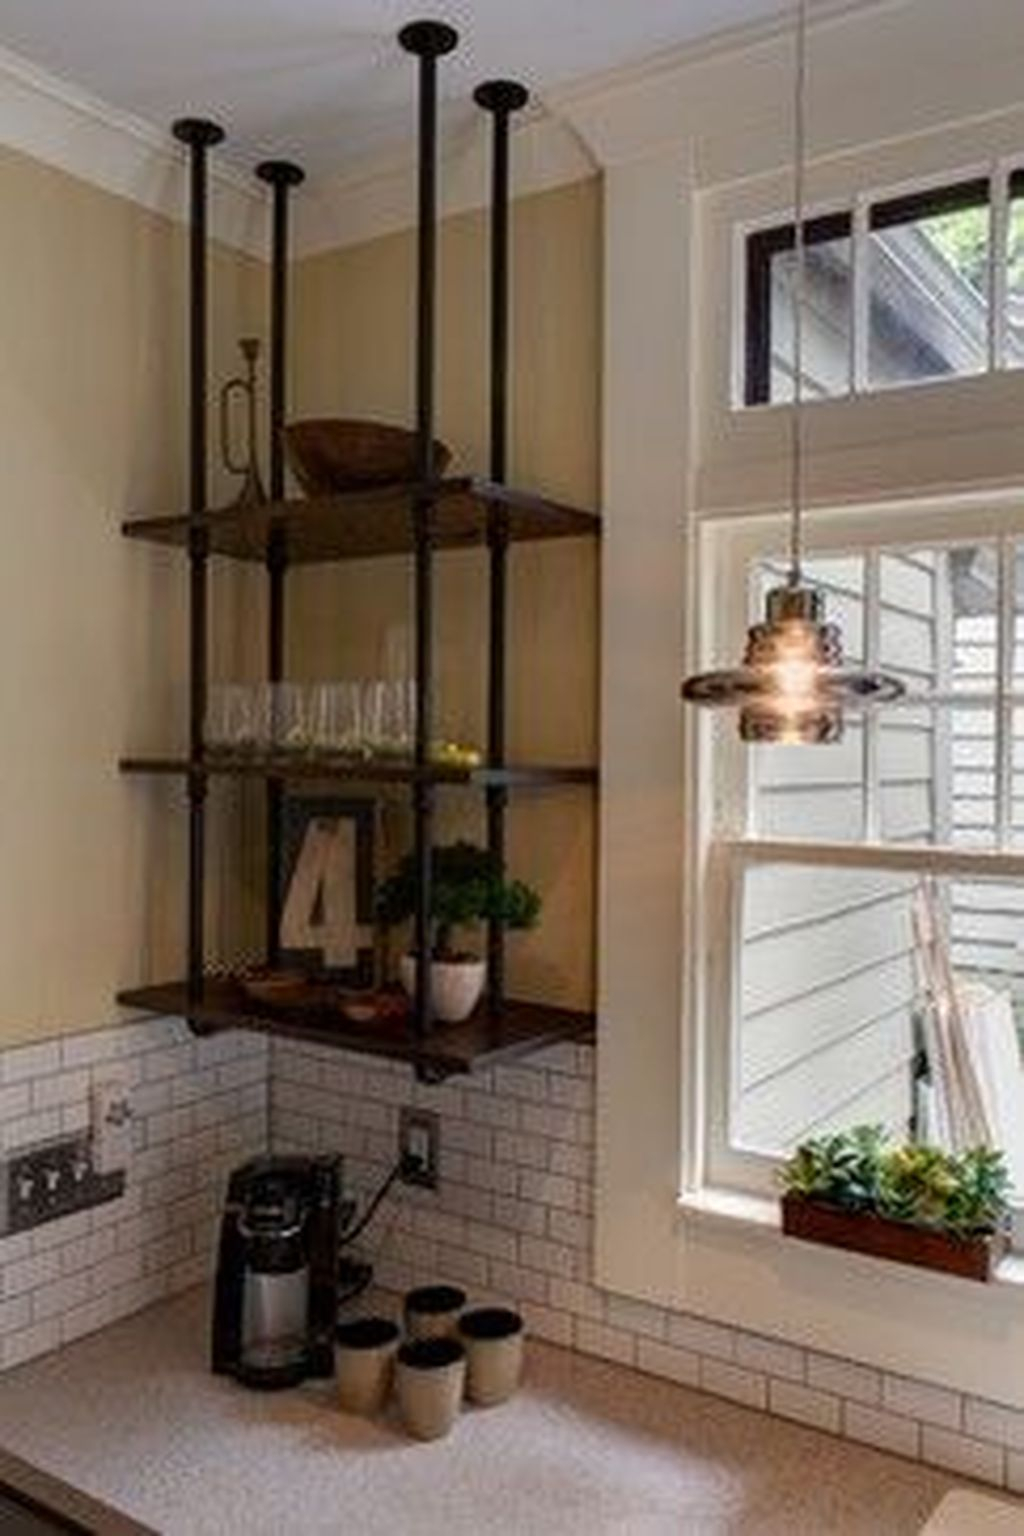 Wonderful Industrial Kitchen Shelf Design Ideas To Organize Your Kitchen28